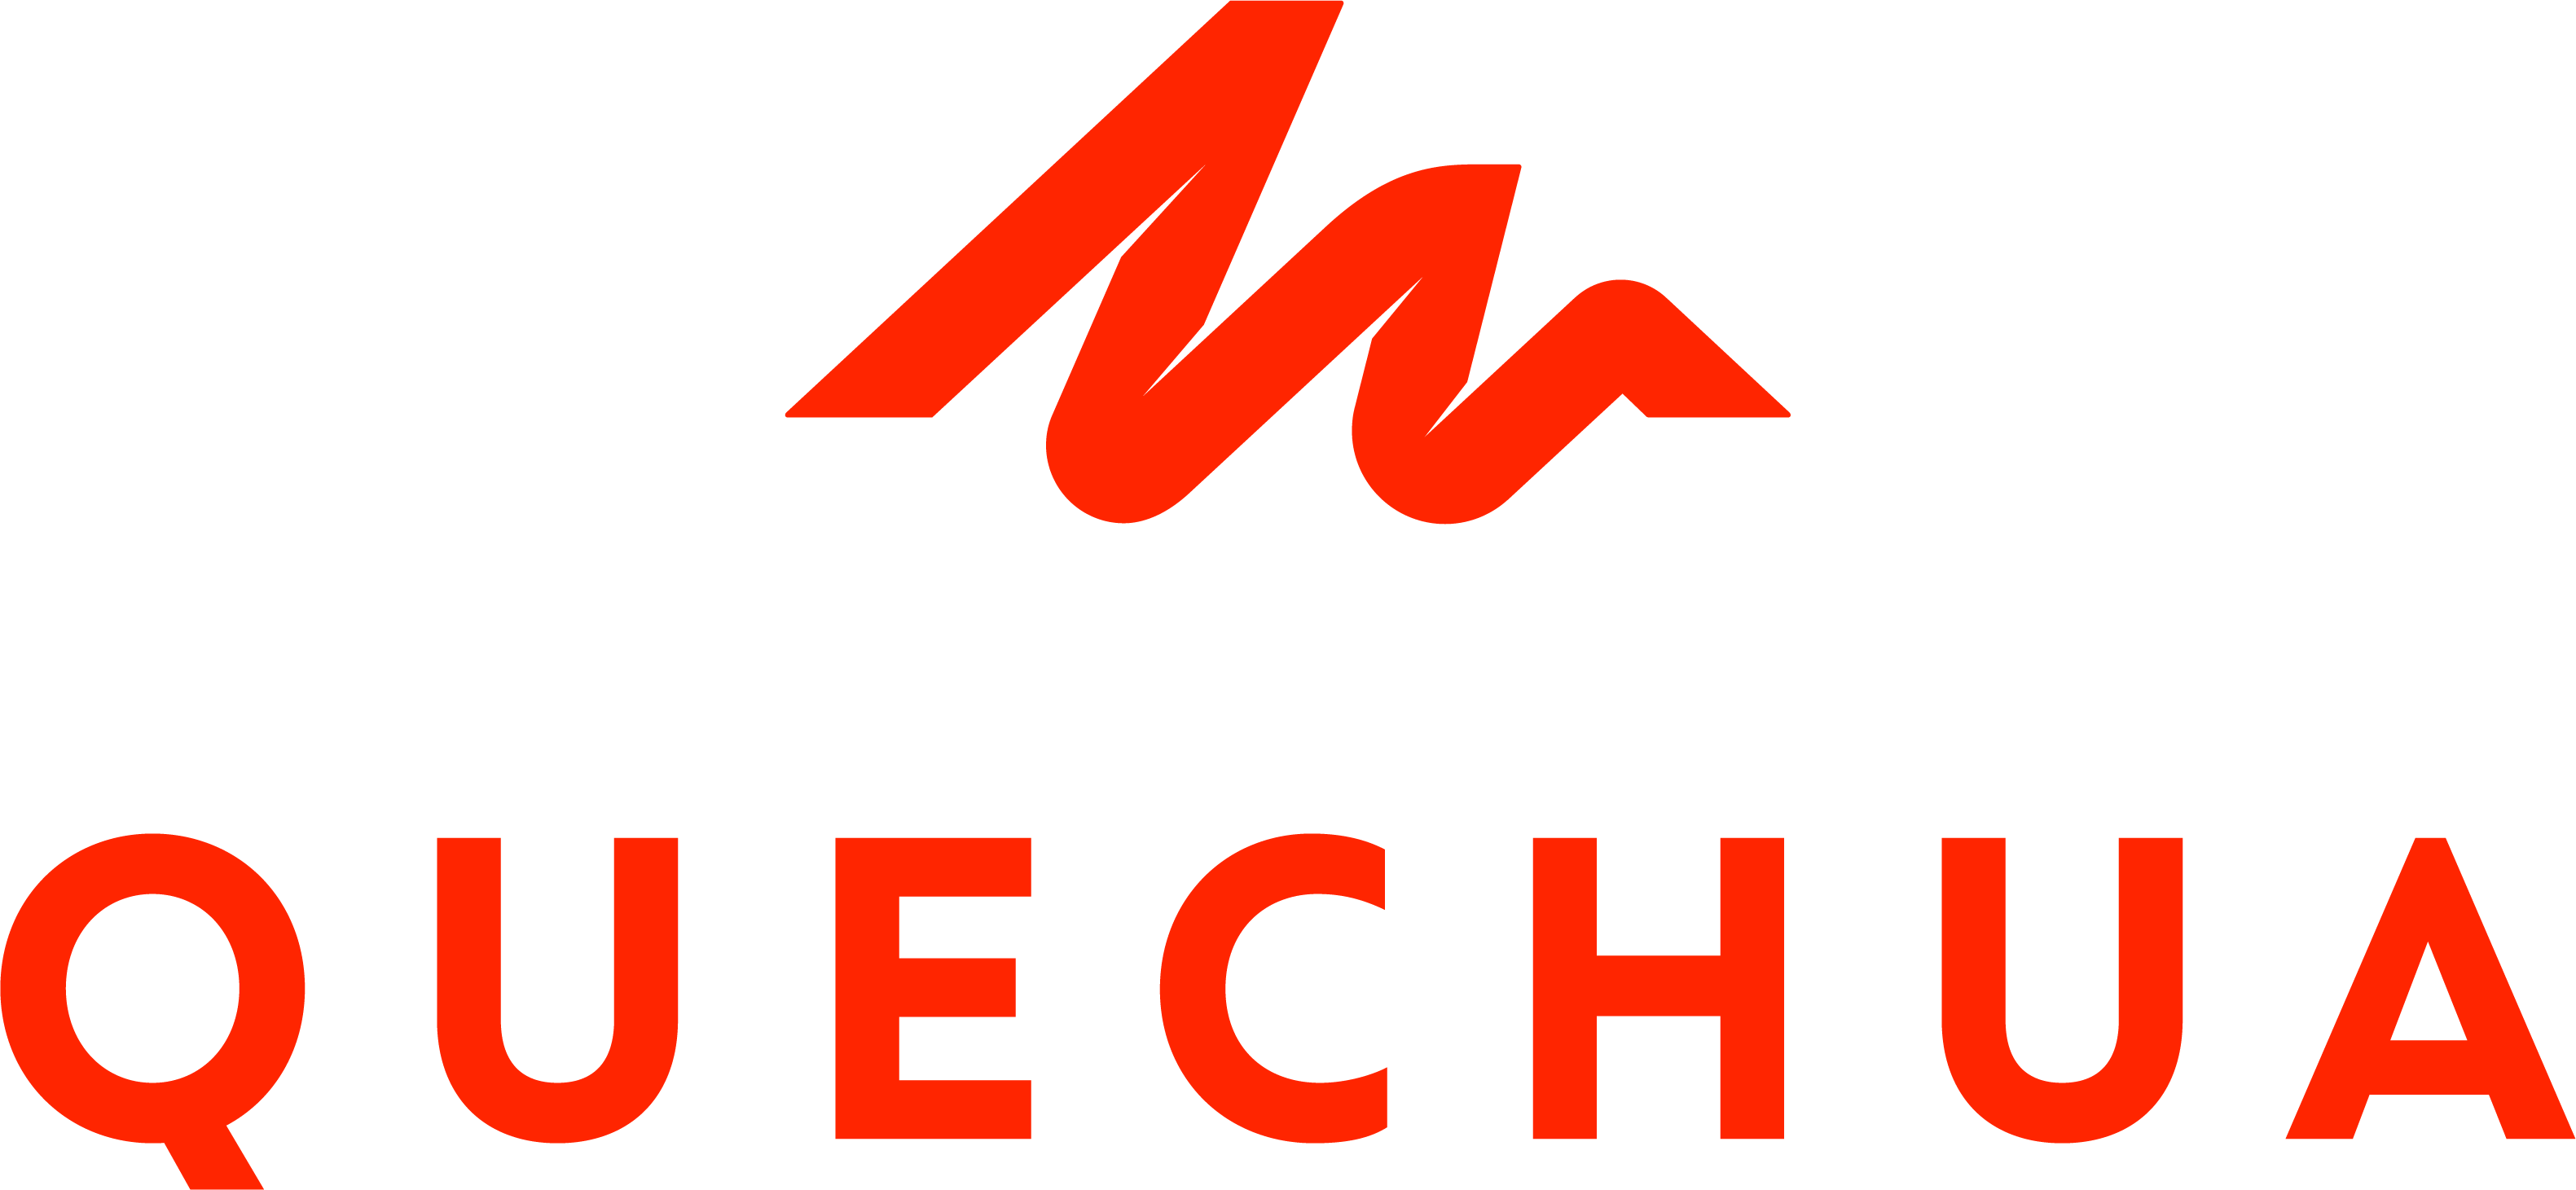 file quechua company logo wikimedia commons #32522